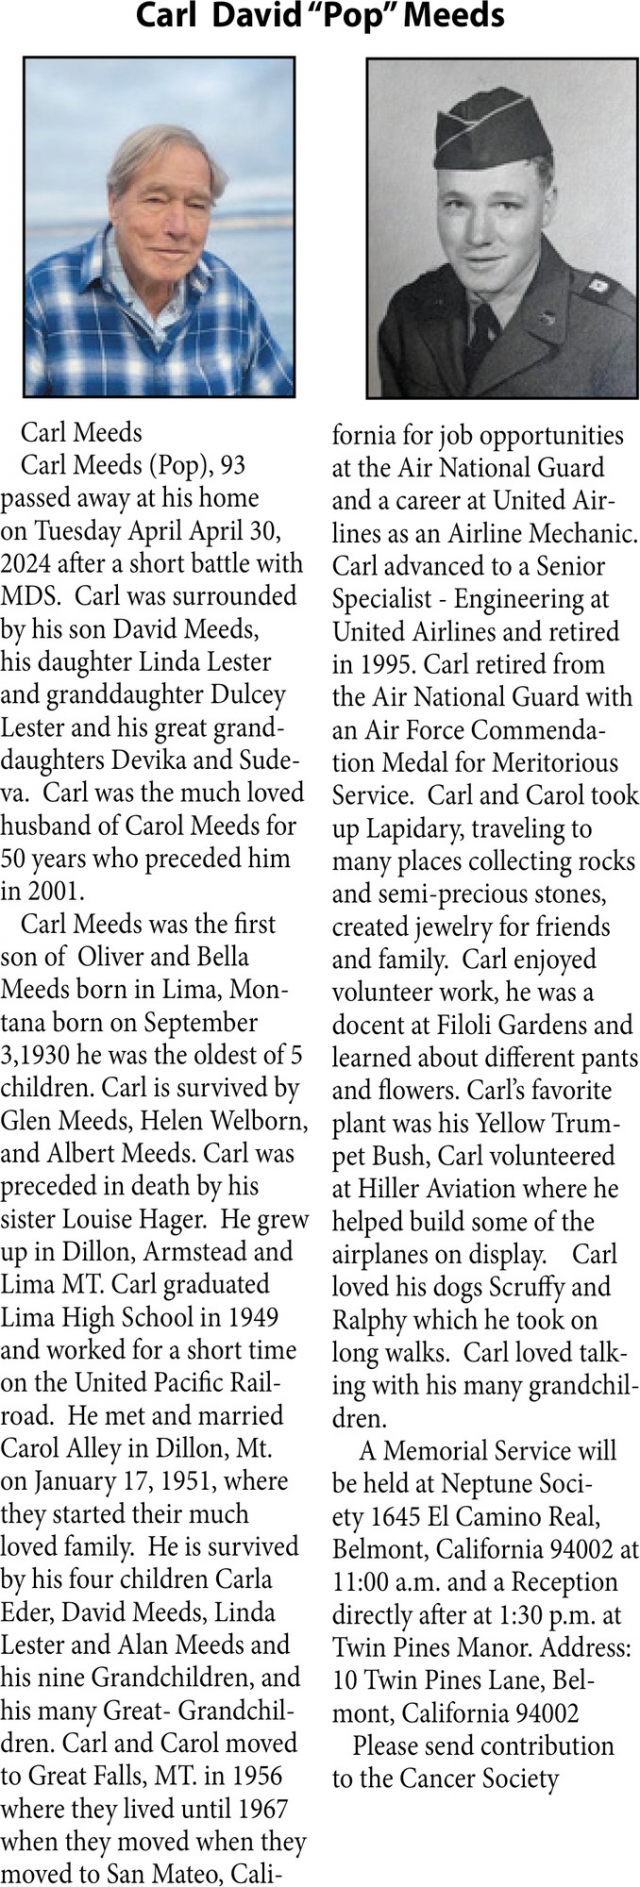 Carl David "Pop" Meeds, Obituaries, Glendive, MT